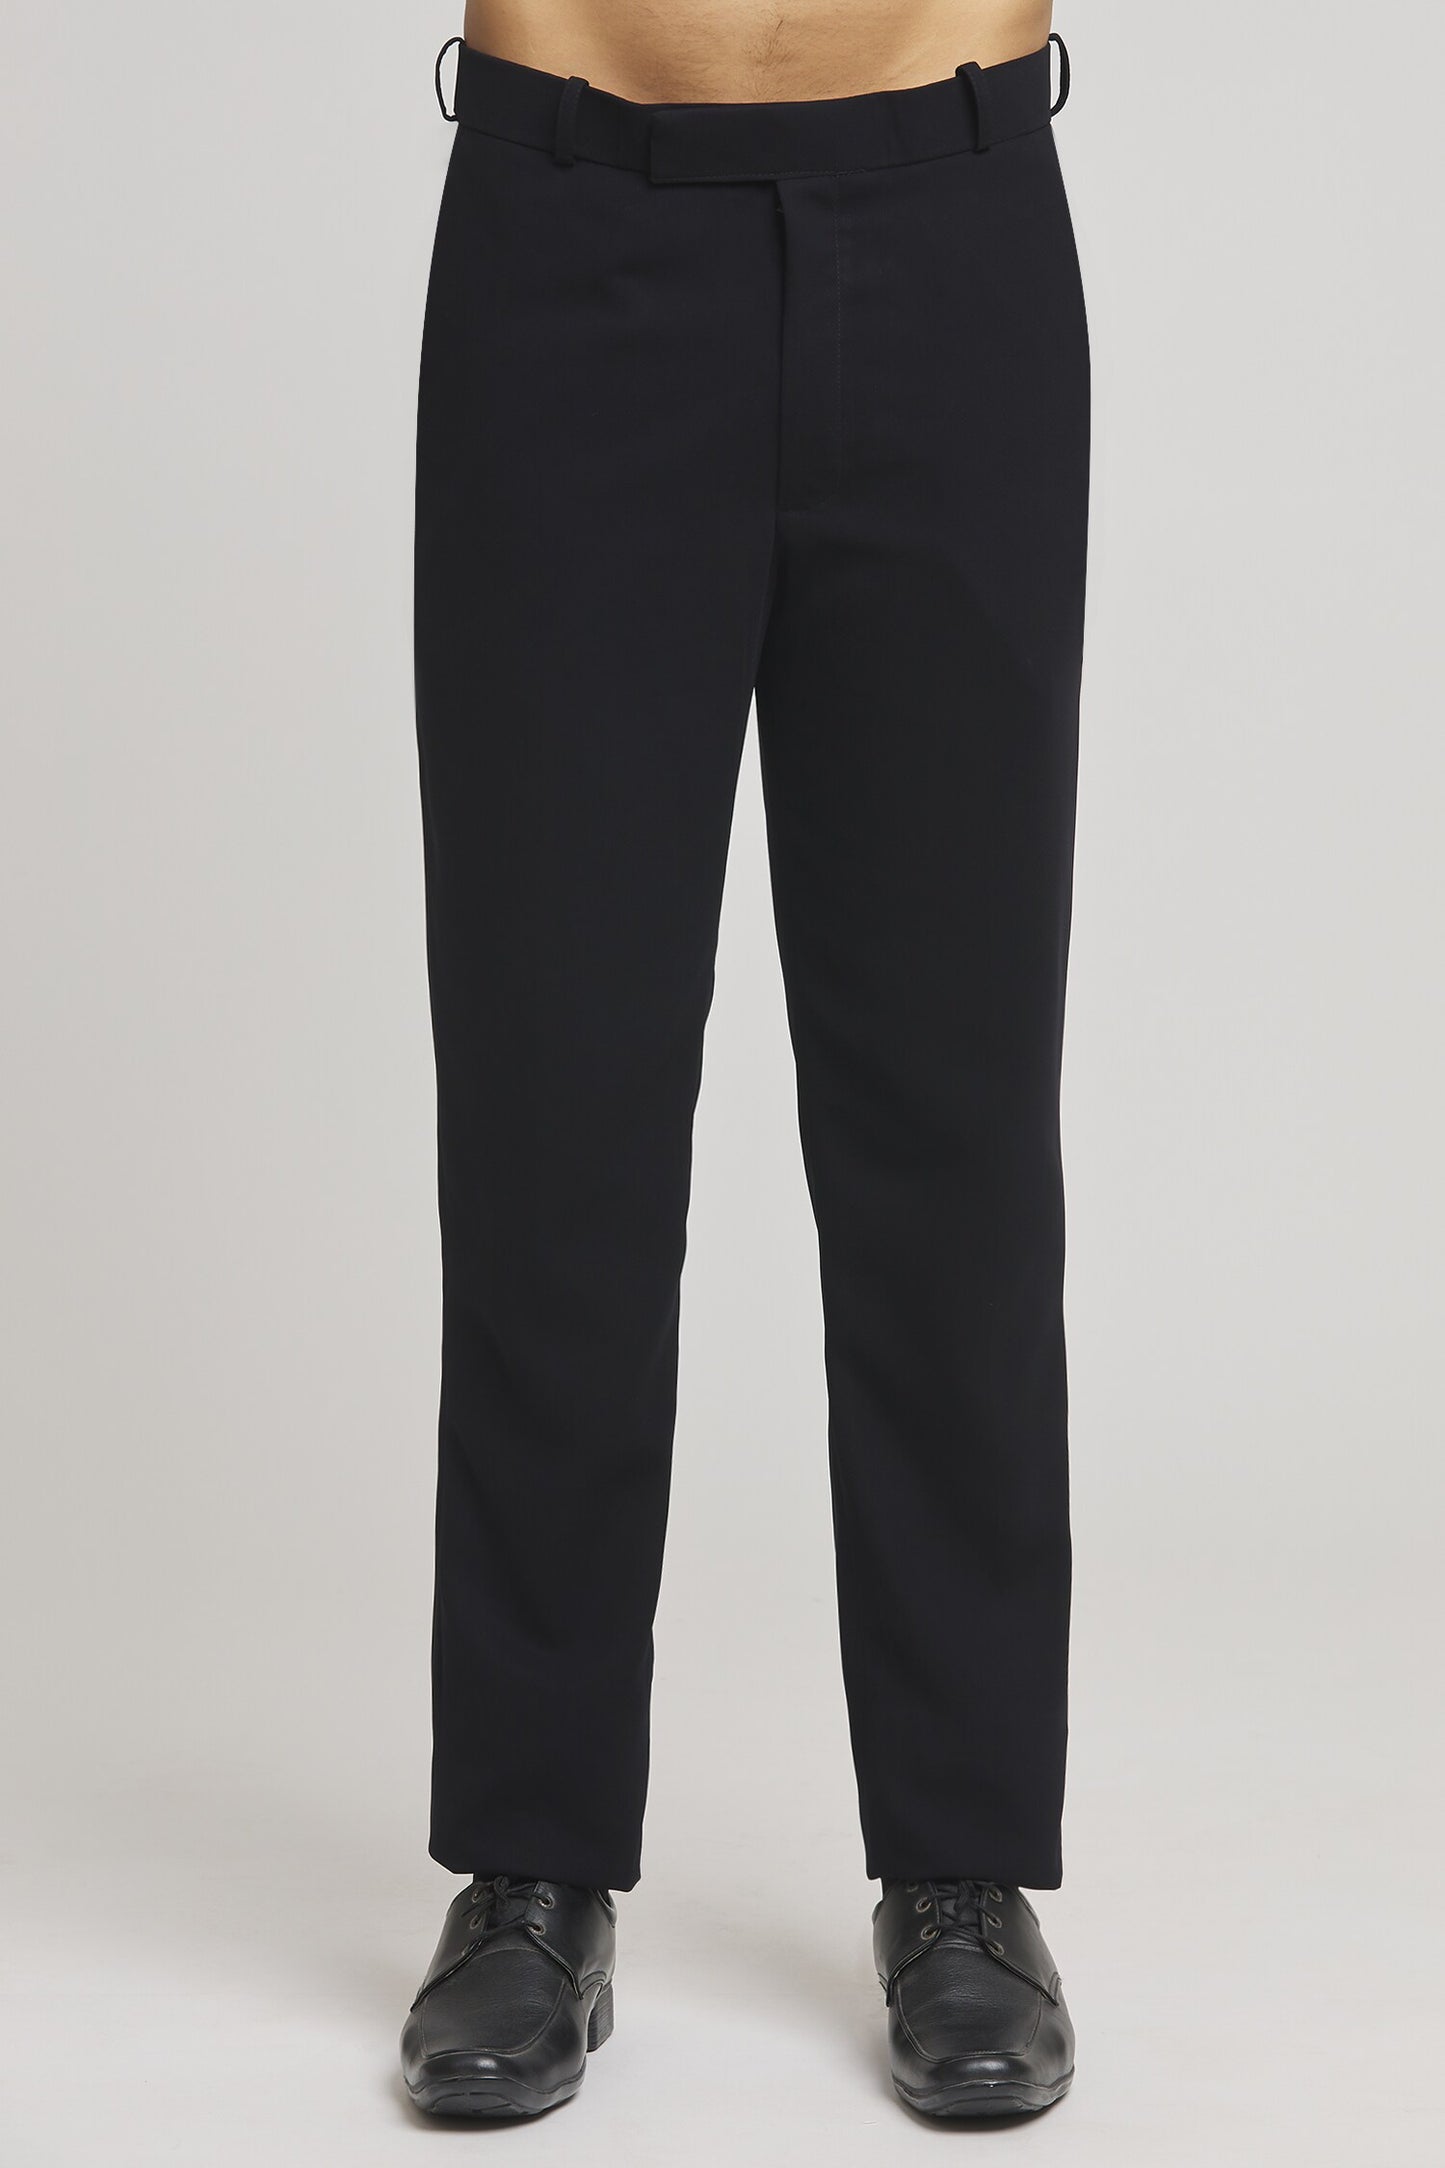 Cutdana Embellished Tuxedo Pant Set